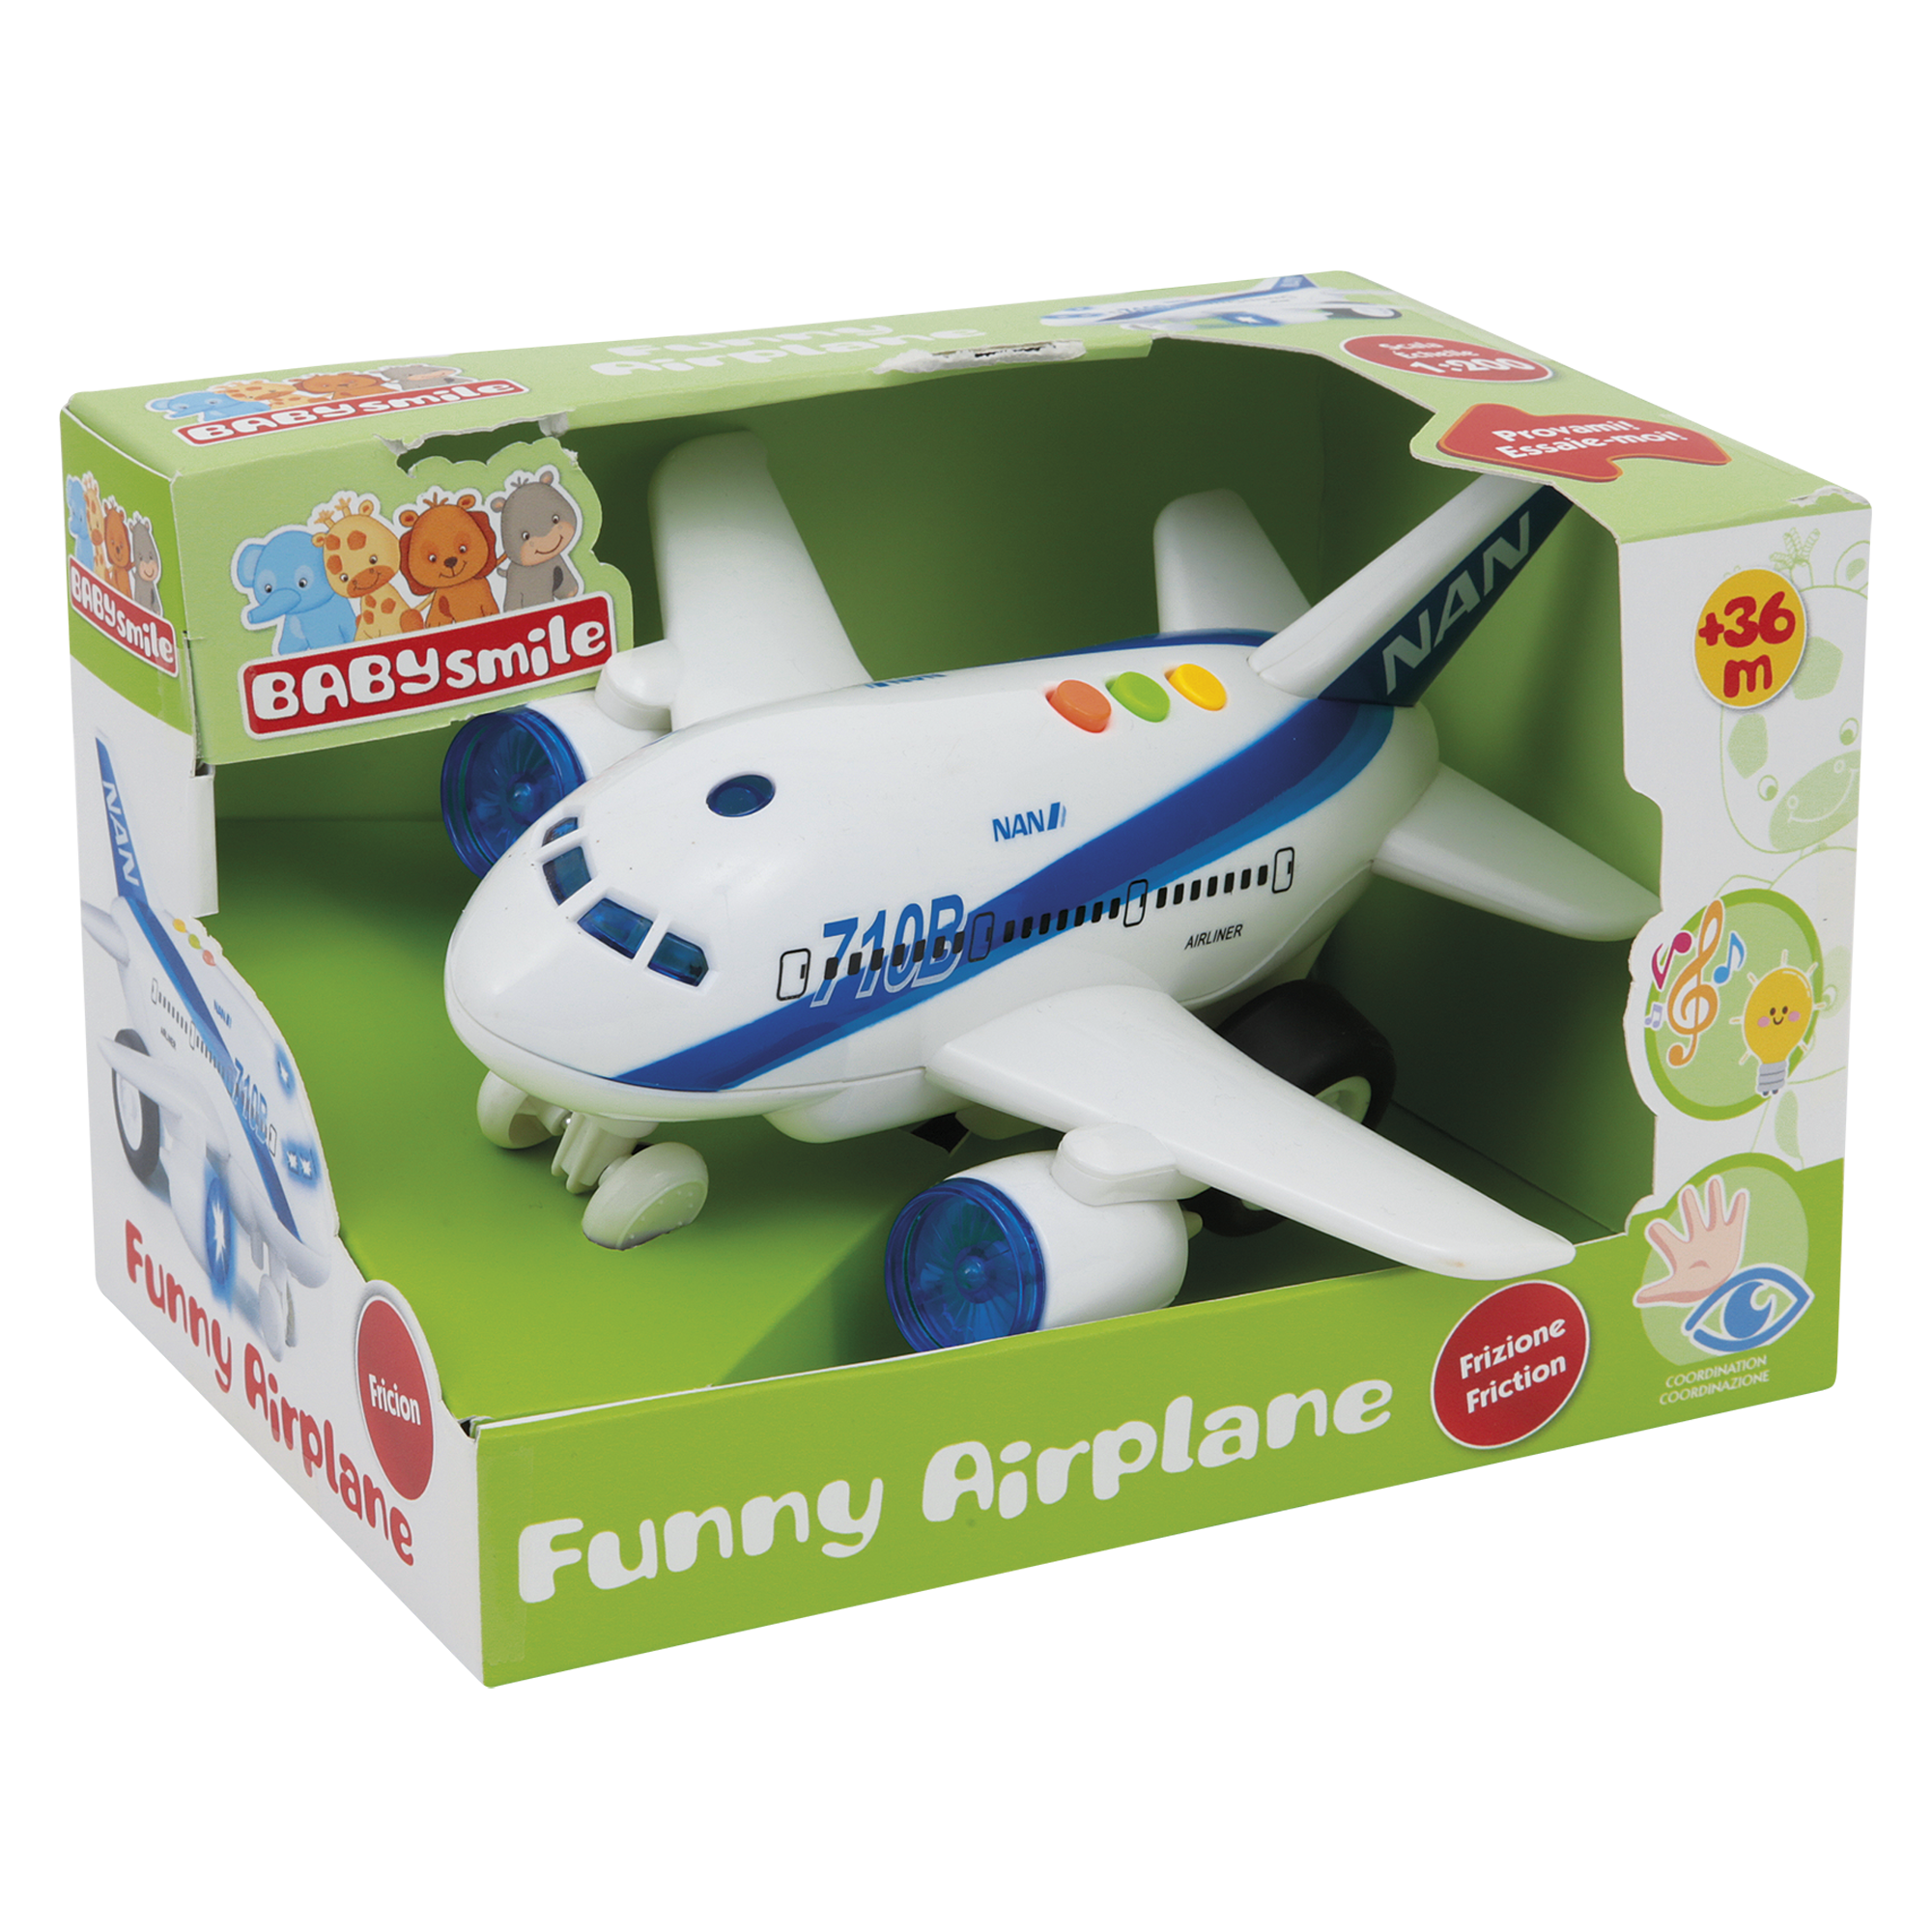 Accessori viaggio aereo per bambini 